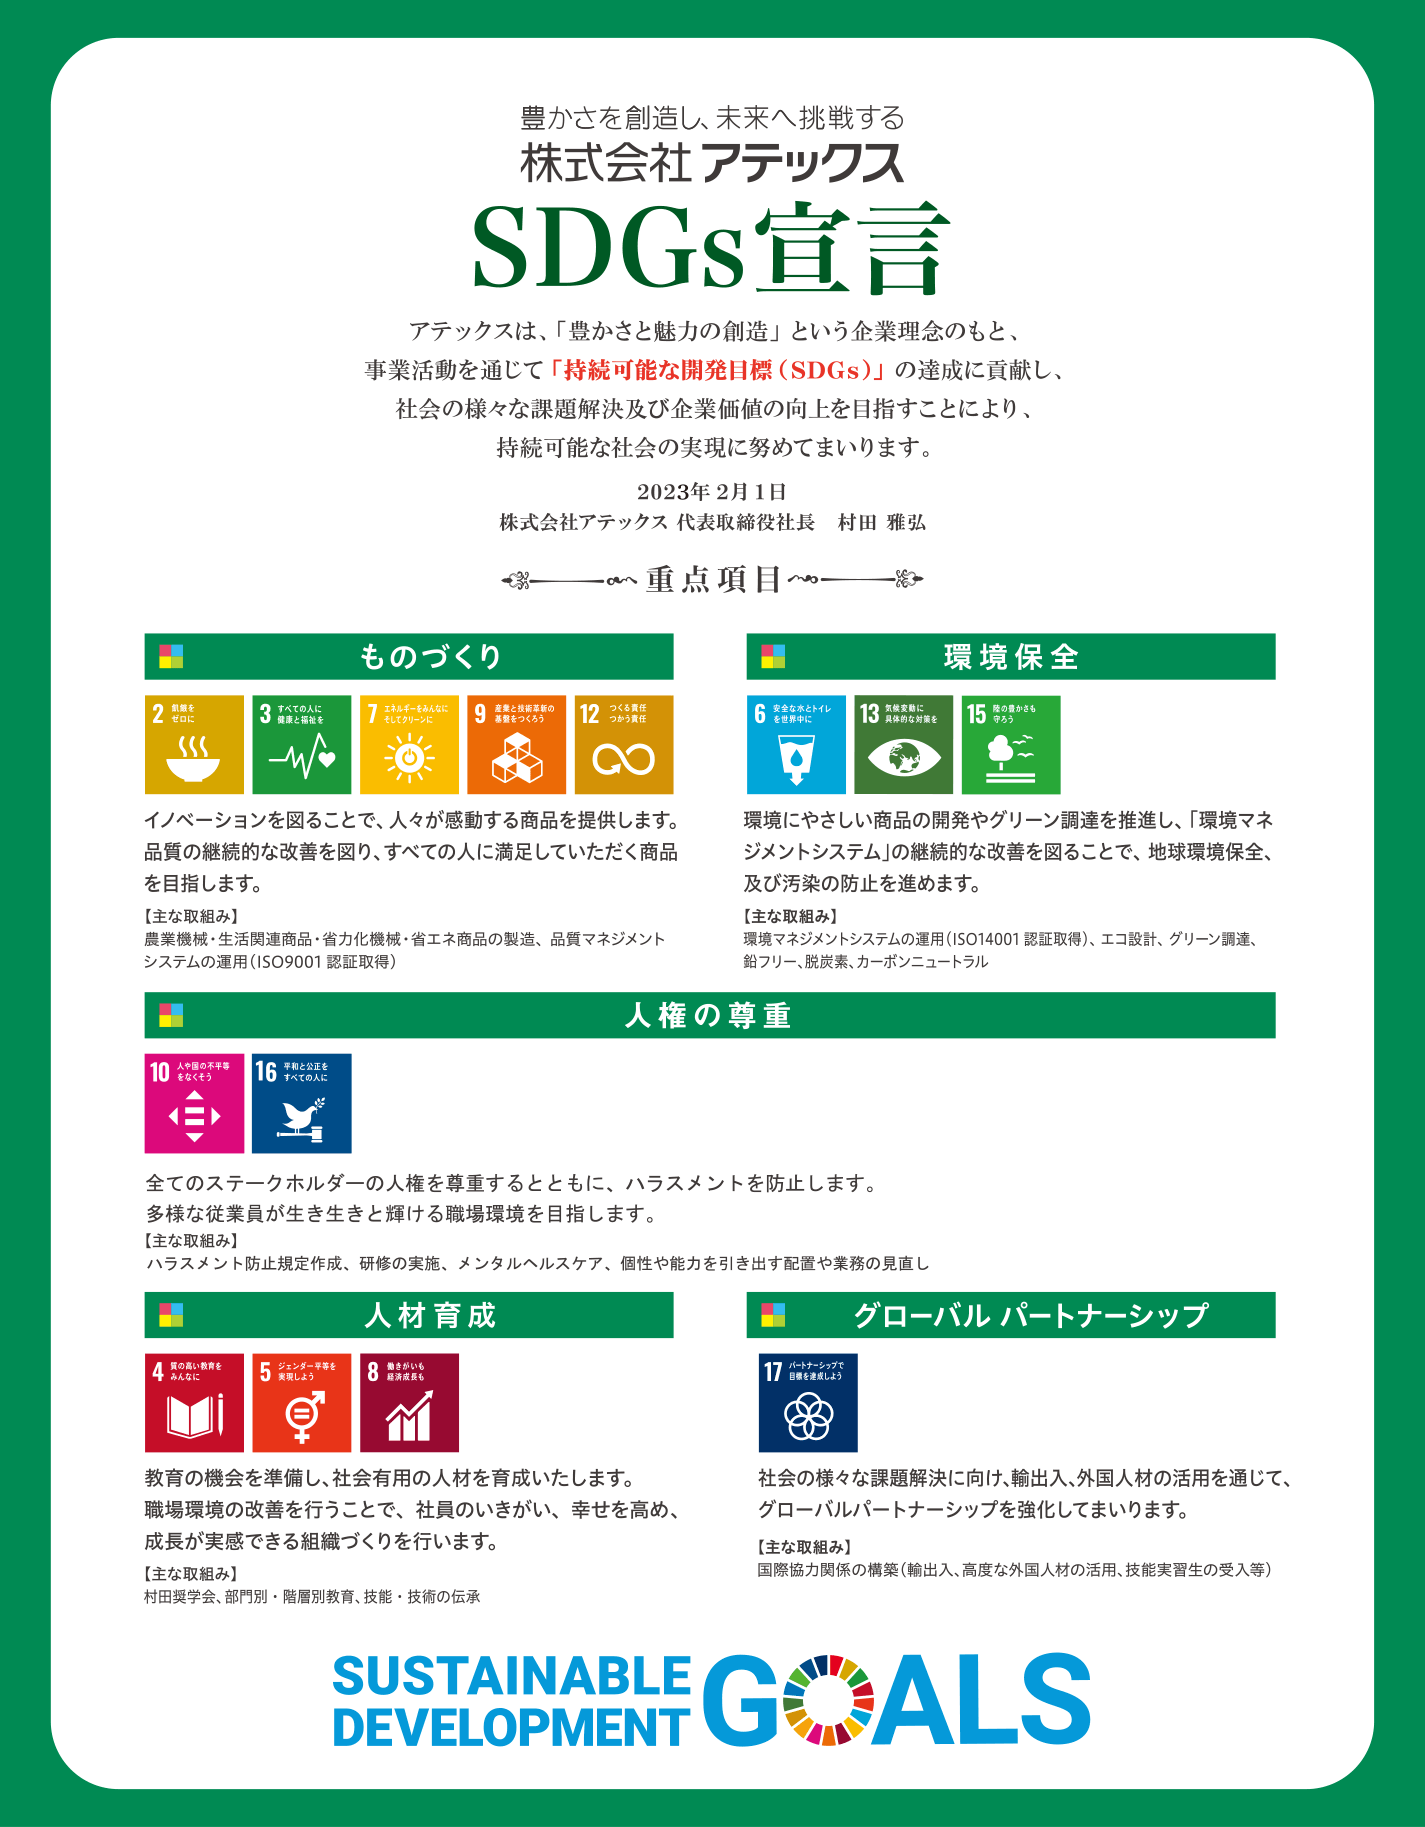 SDGs宣言について